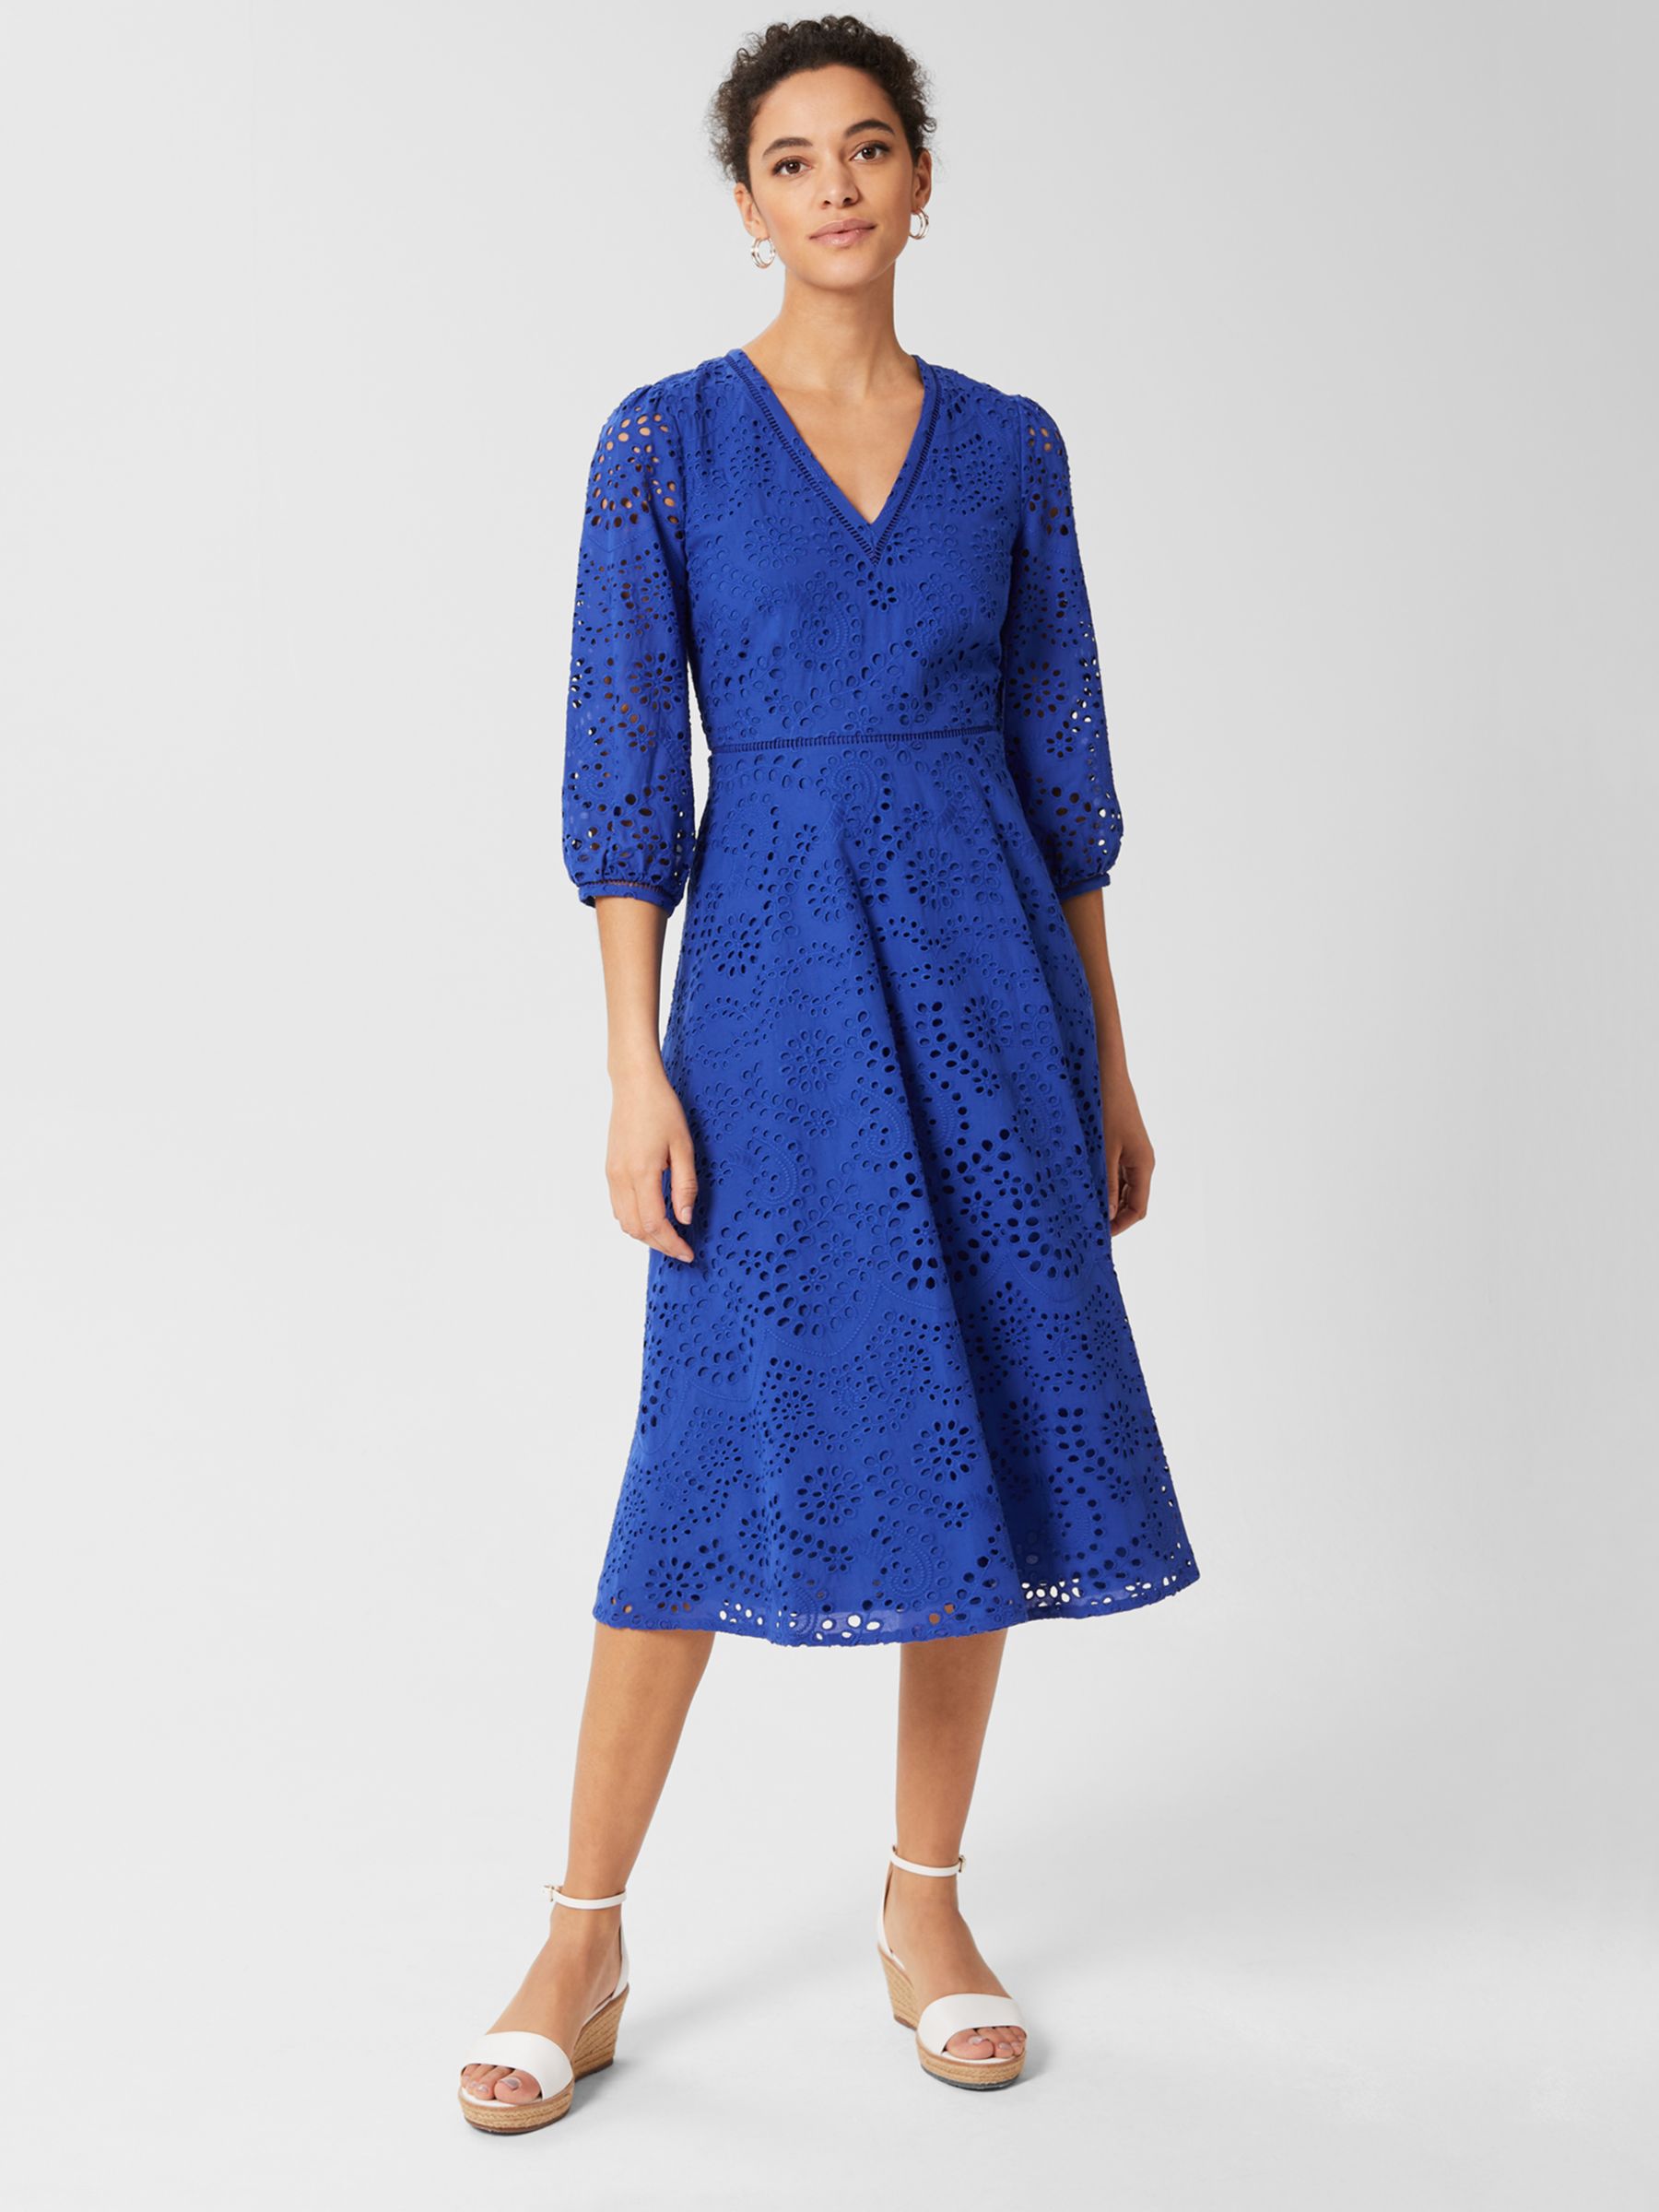 Hobbs Rhea Broderie Anglaise Cotton Dress, Cobalt Blue